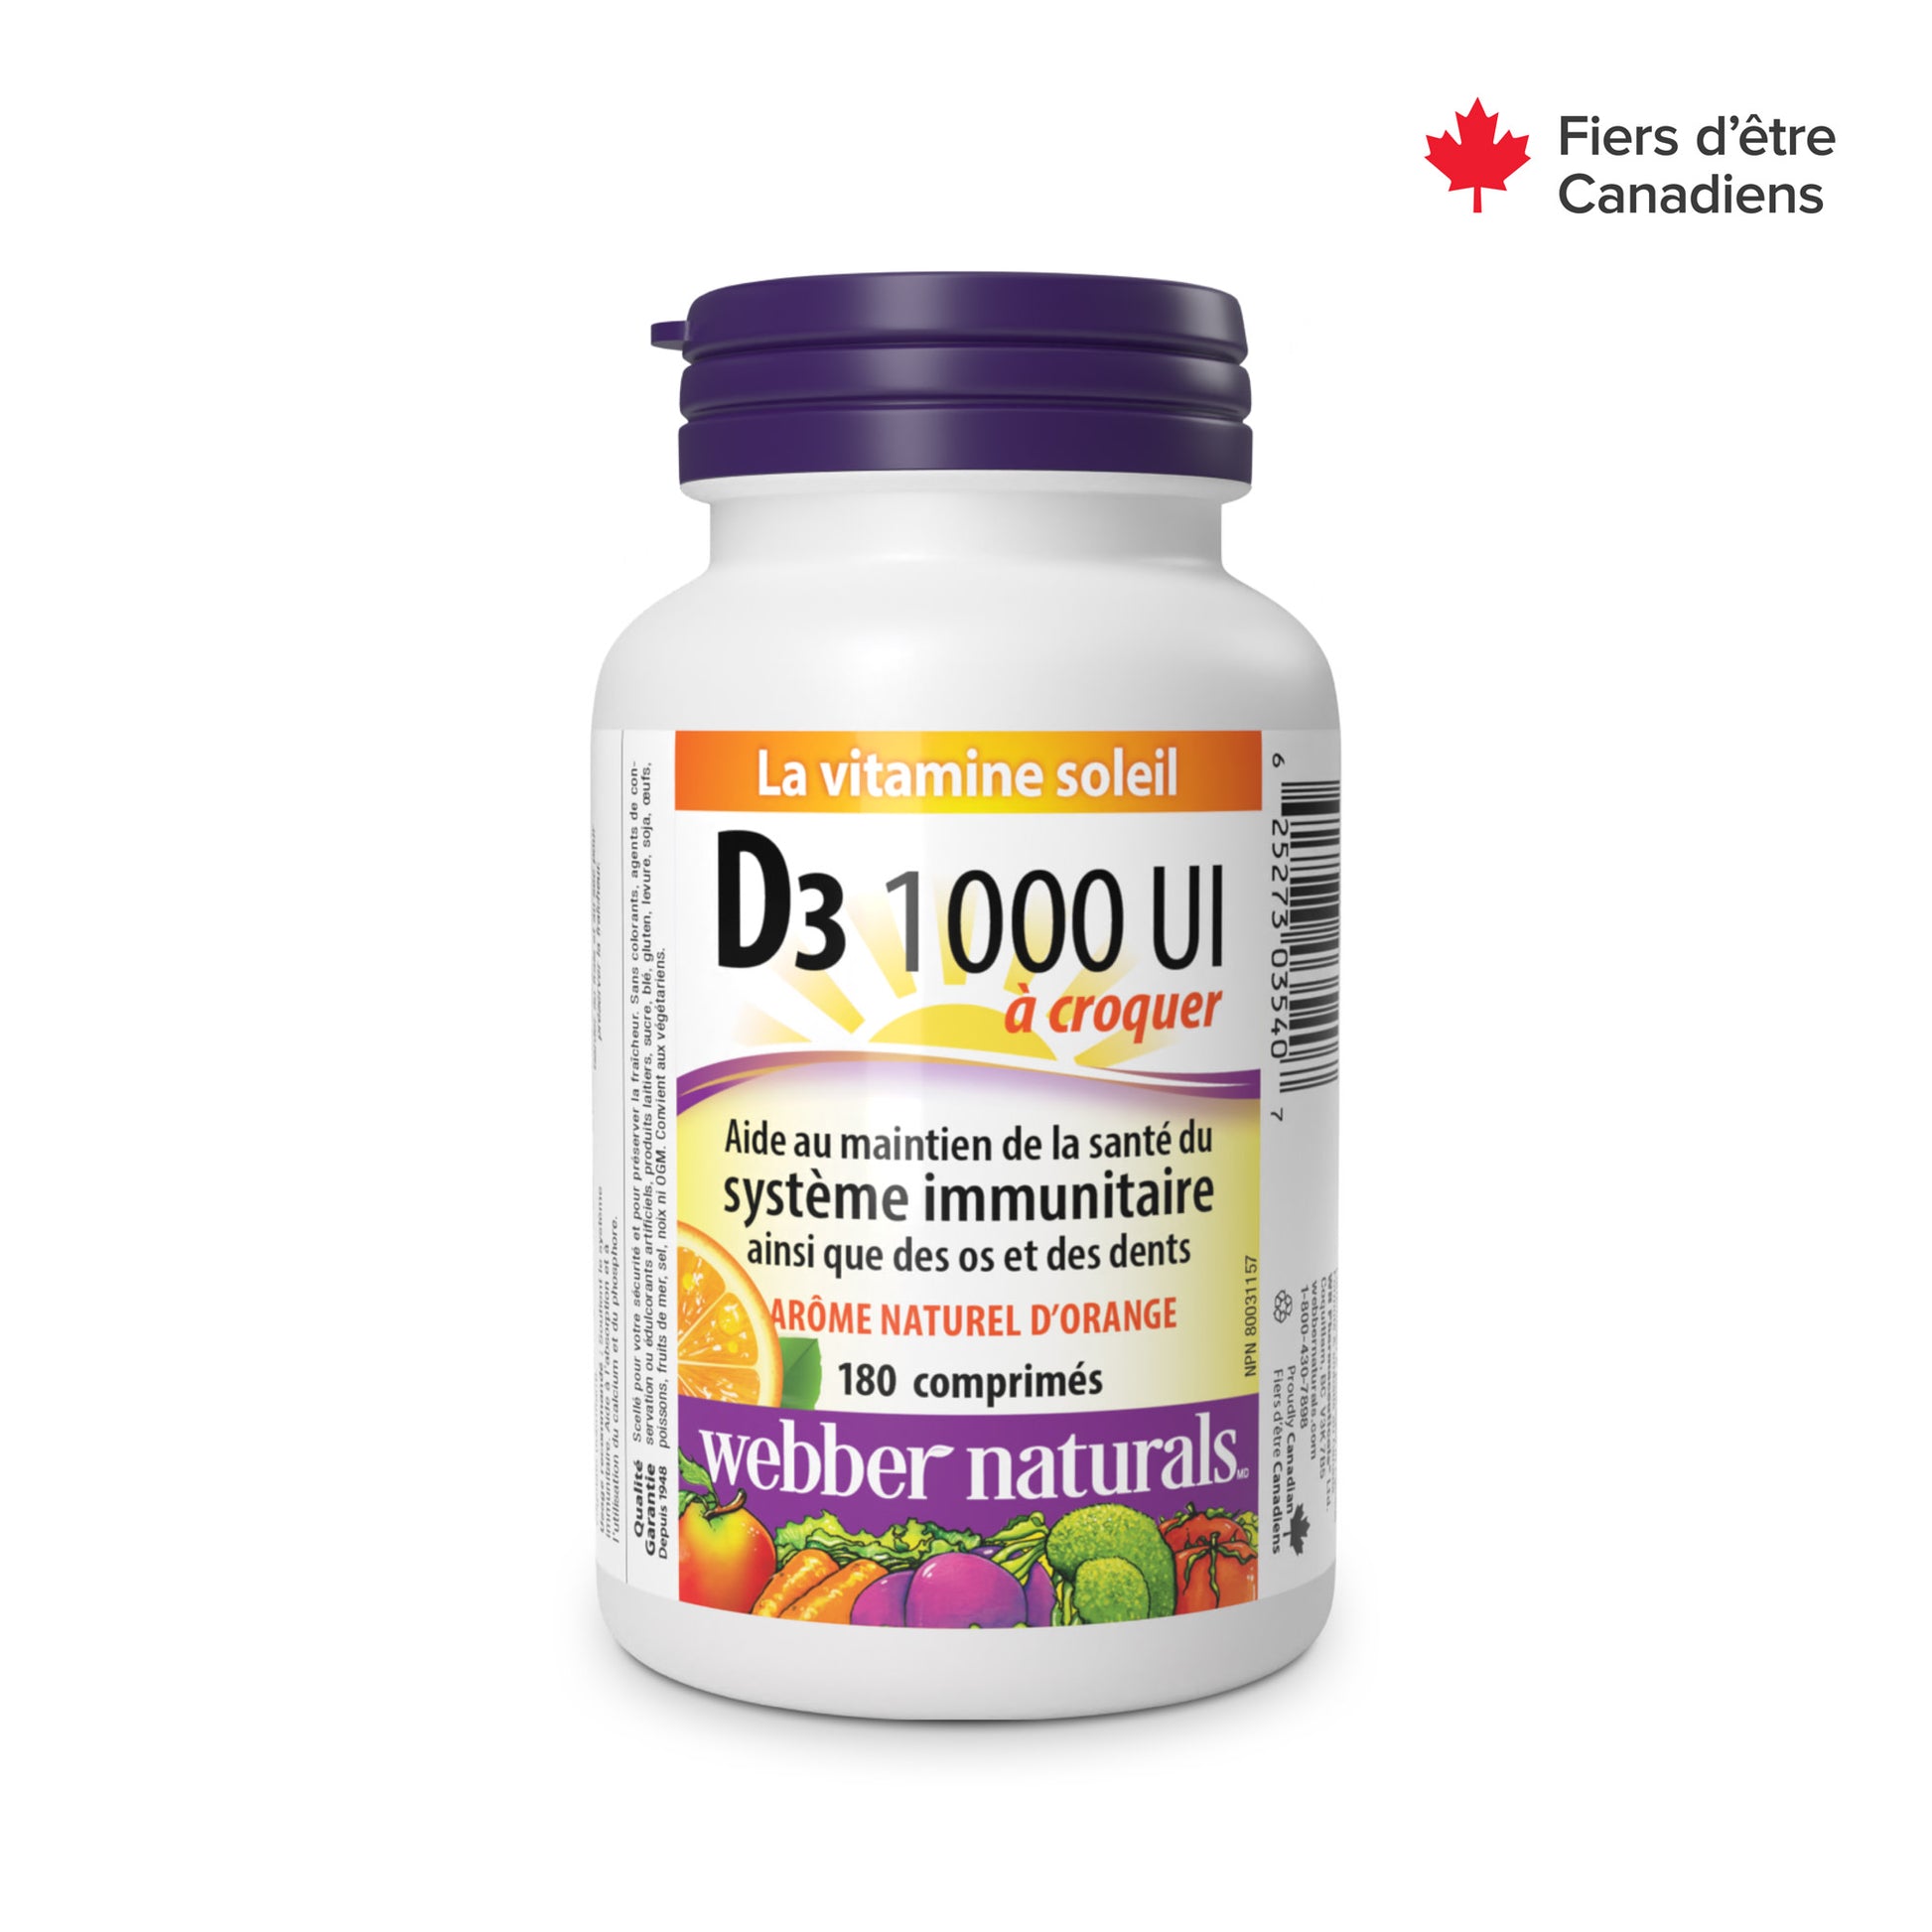 Vitamin D3 Chewable 1000 IU, Natural Orange Flavour for Webber Naturals|v|hi-res|WN3540